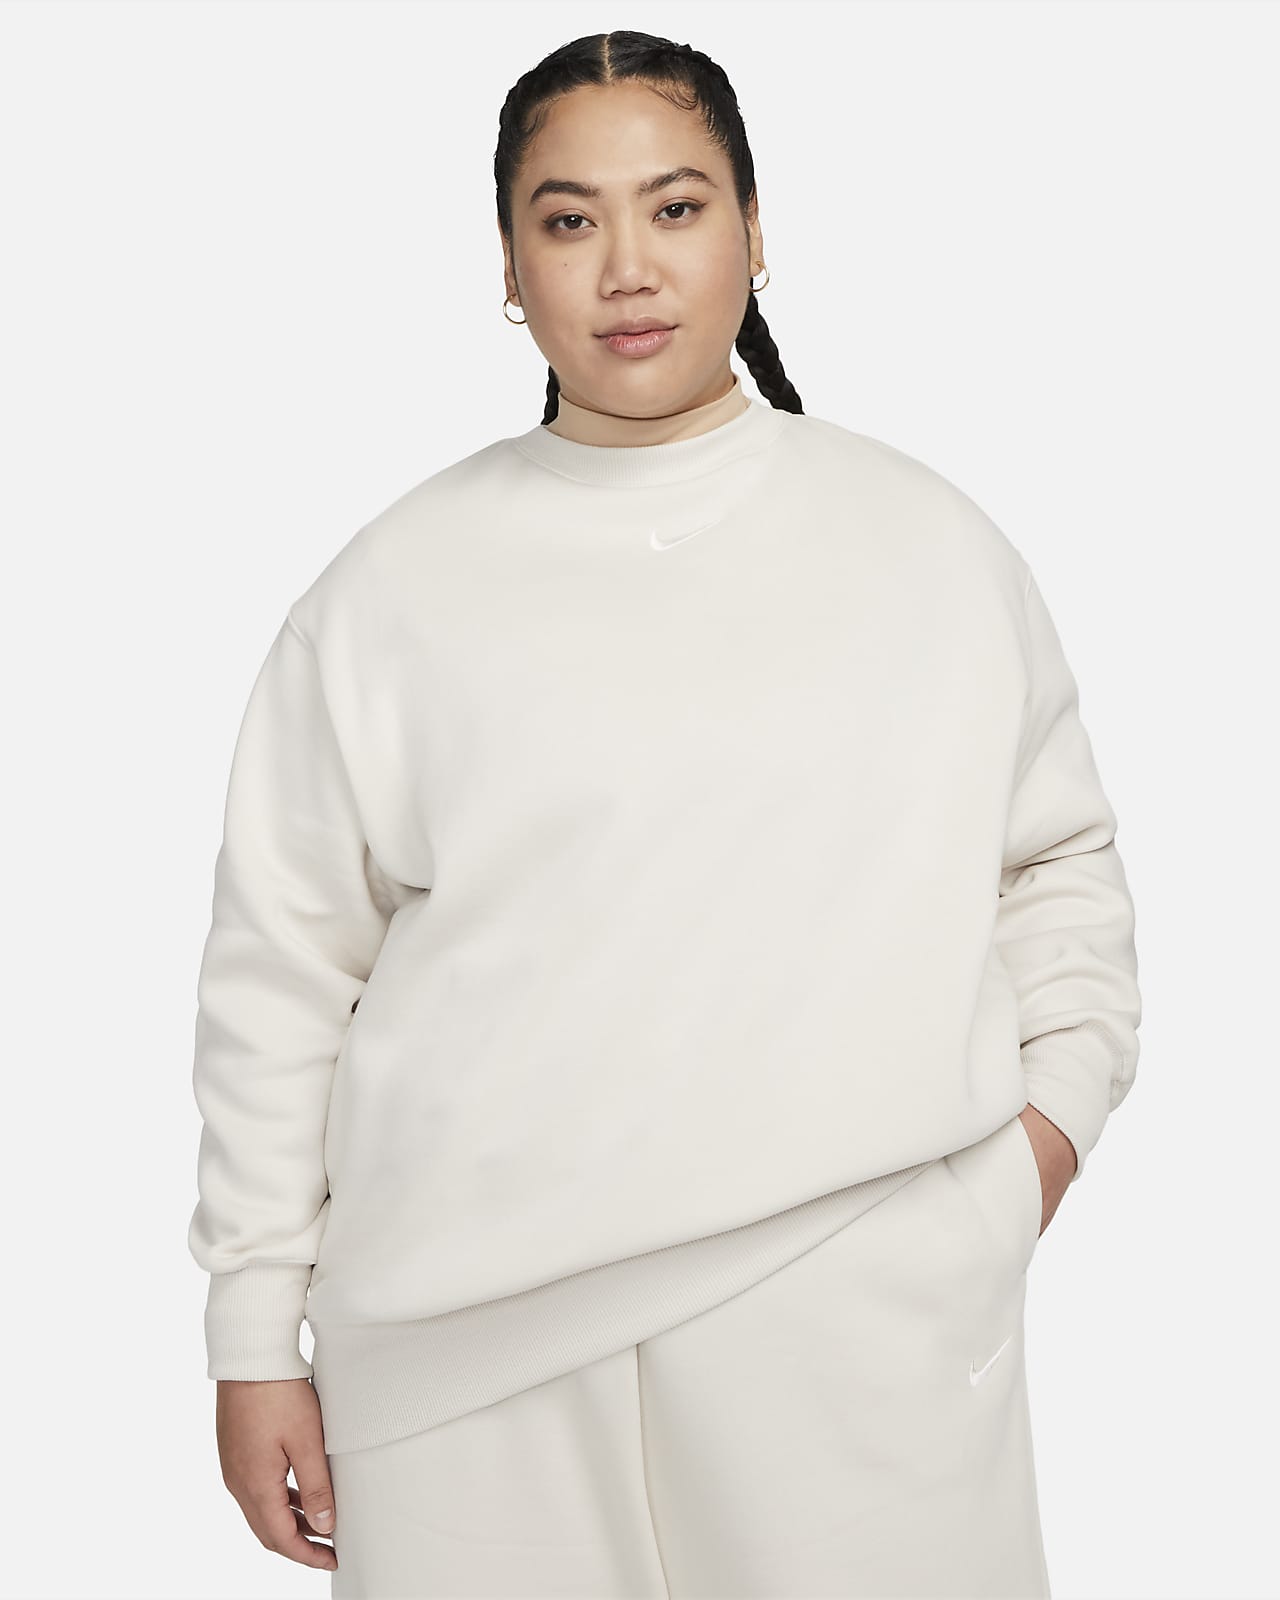 Nike Sportswear Phoenix Fleece Bol Kesimli Sıfır Yaka Kadın Sweatshirt'ü (Büyük Beden)